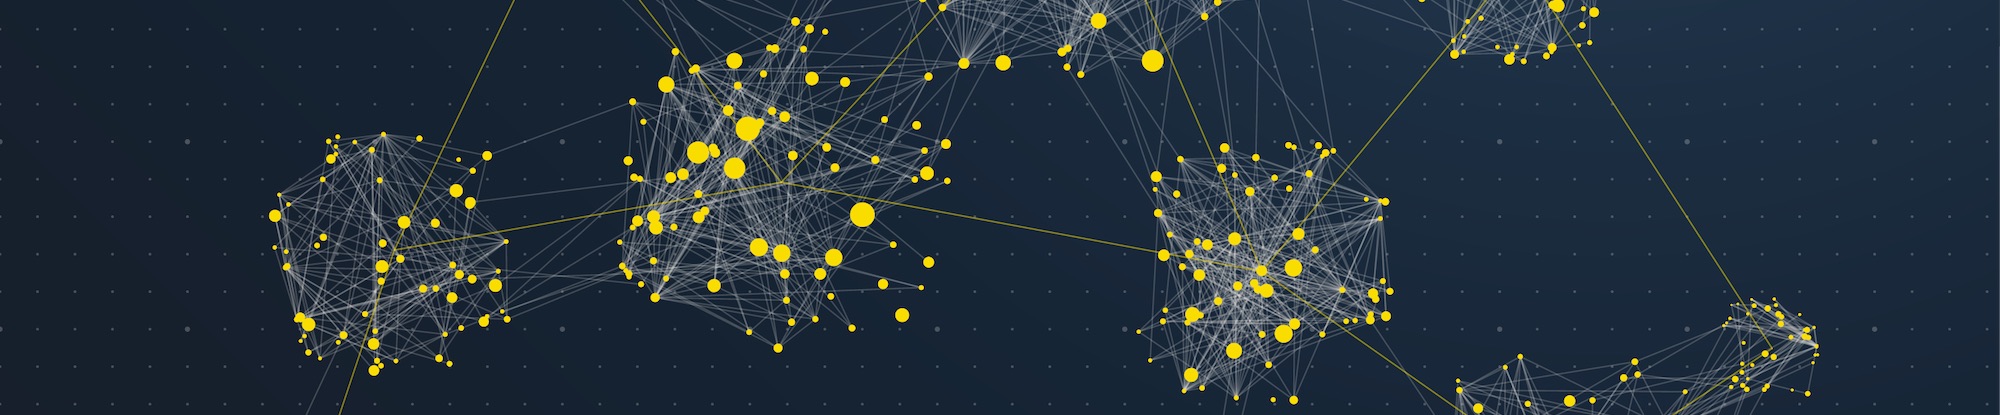 blog-banner-network-graph-dots.jpg